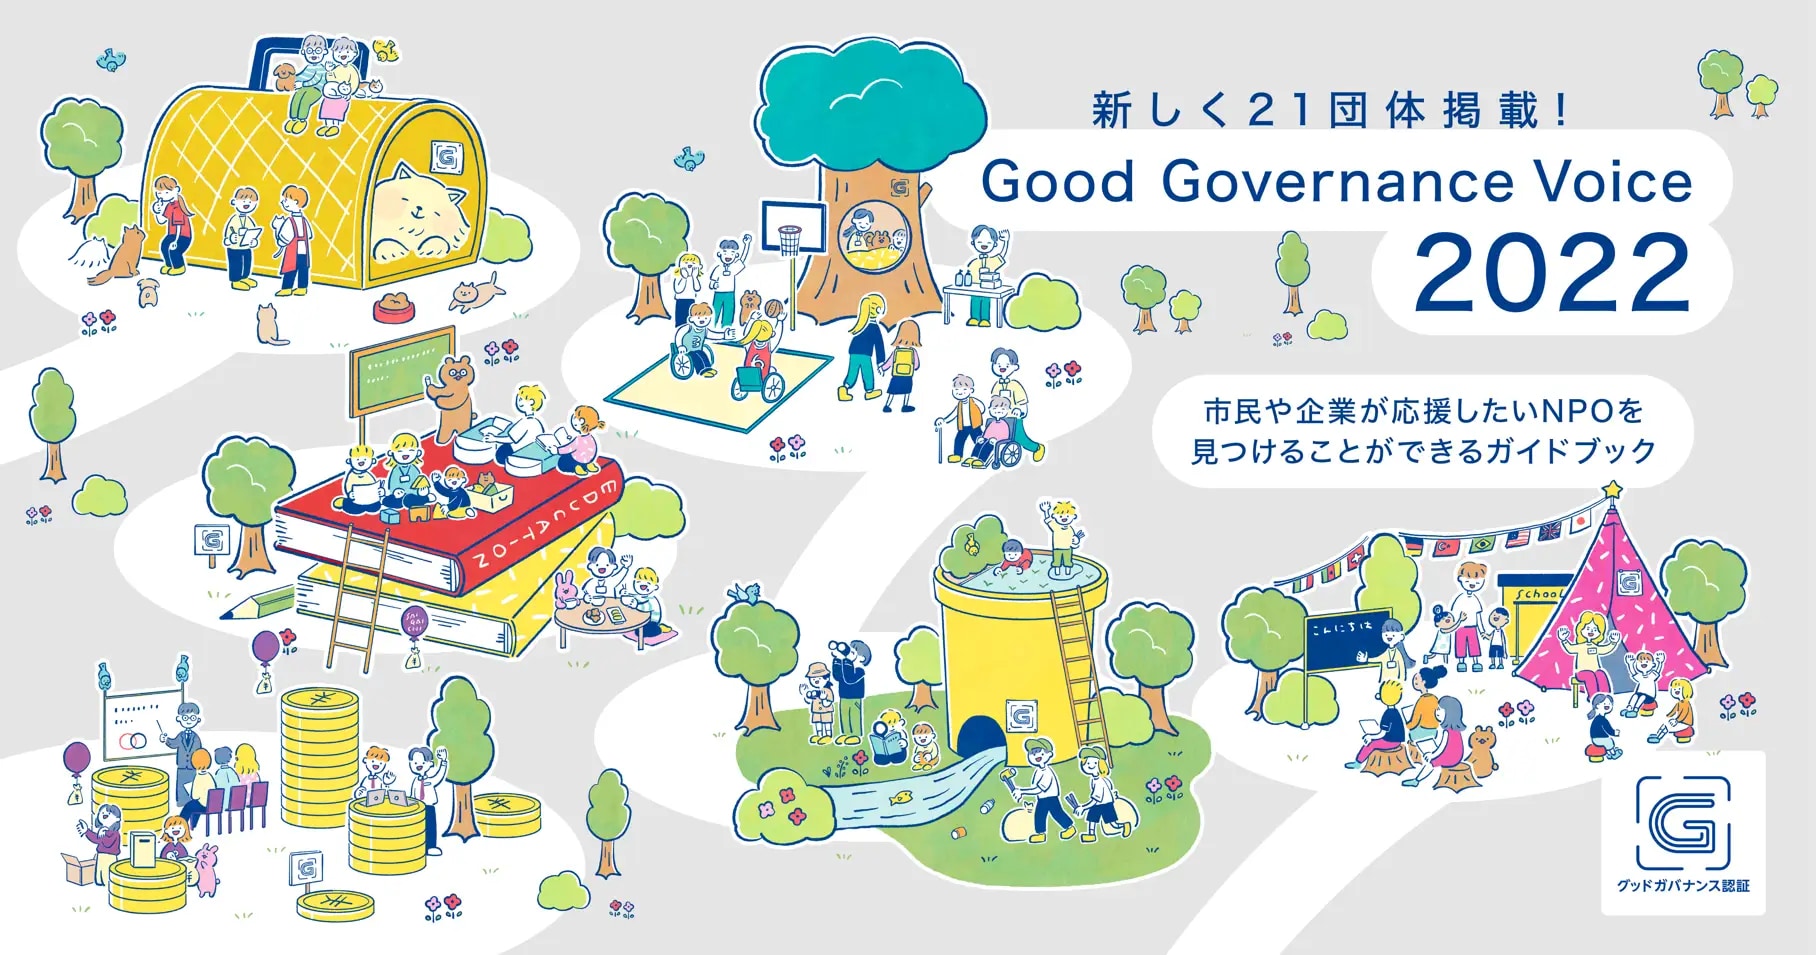 グッドガバナンス認証取得団体の活動を紹介するガイドブック『Good Governance Voice2022』